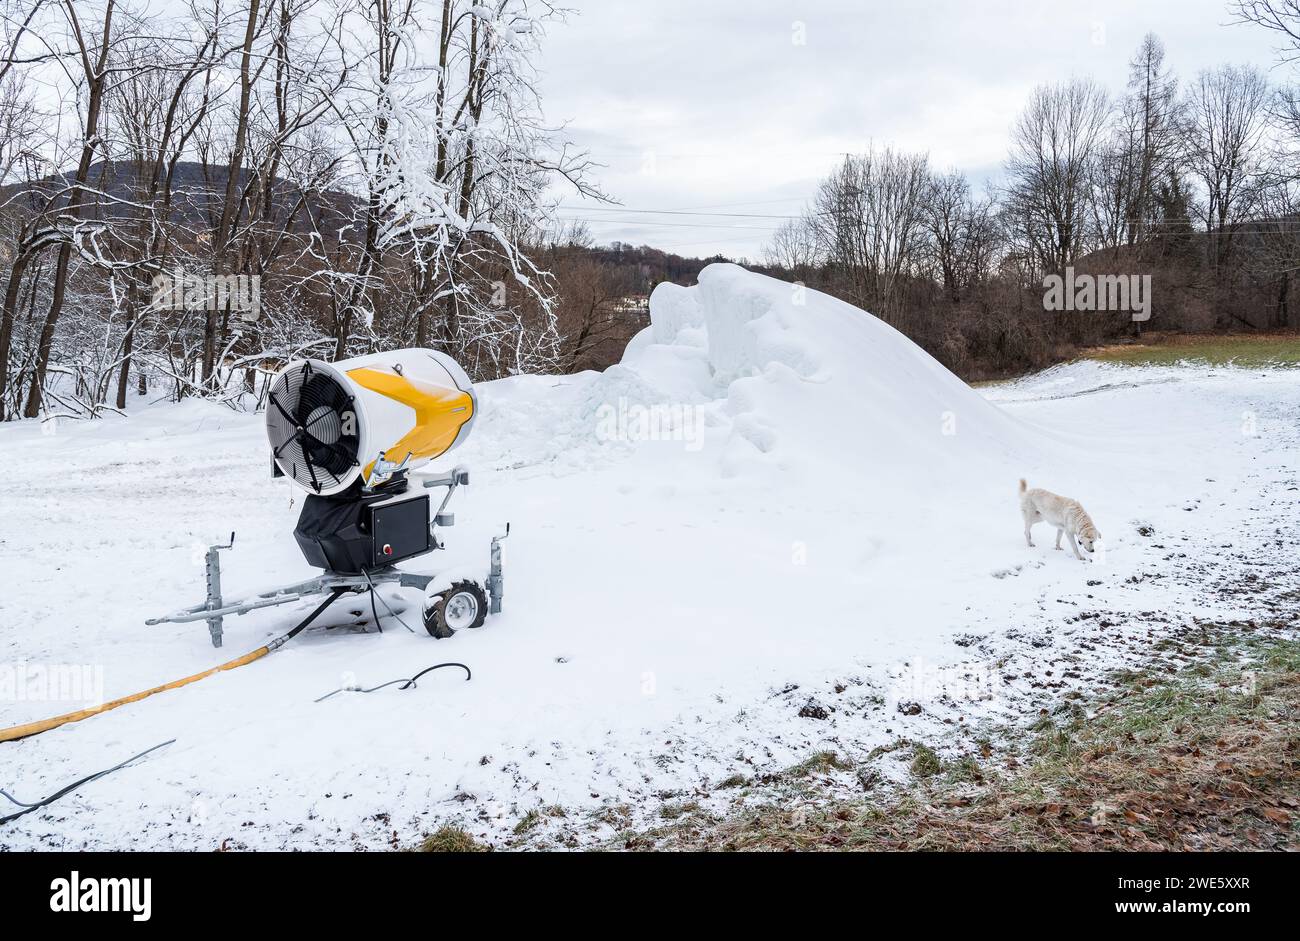 Cannone da neve per la produzione di neve artificiale per piste da sci. Sistema di innevamento artificiale. Foto Stock